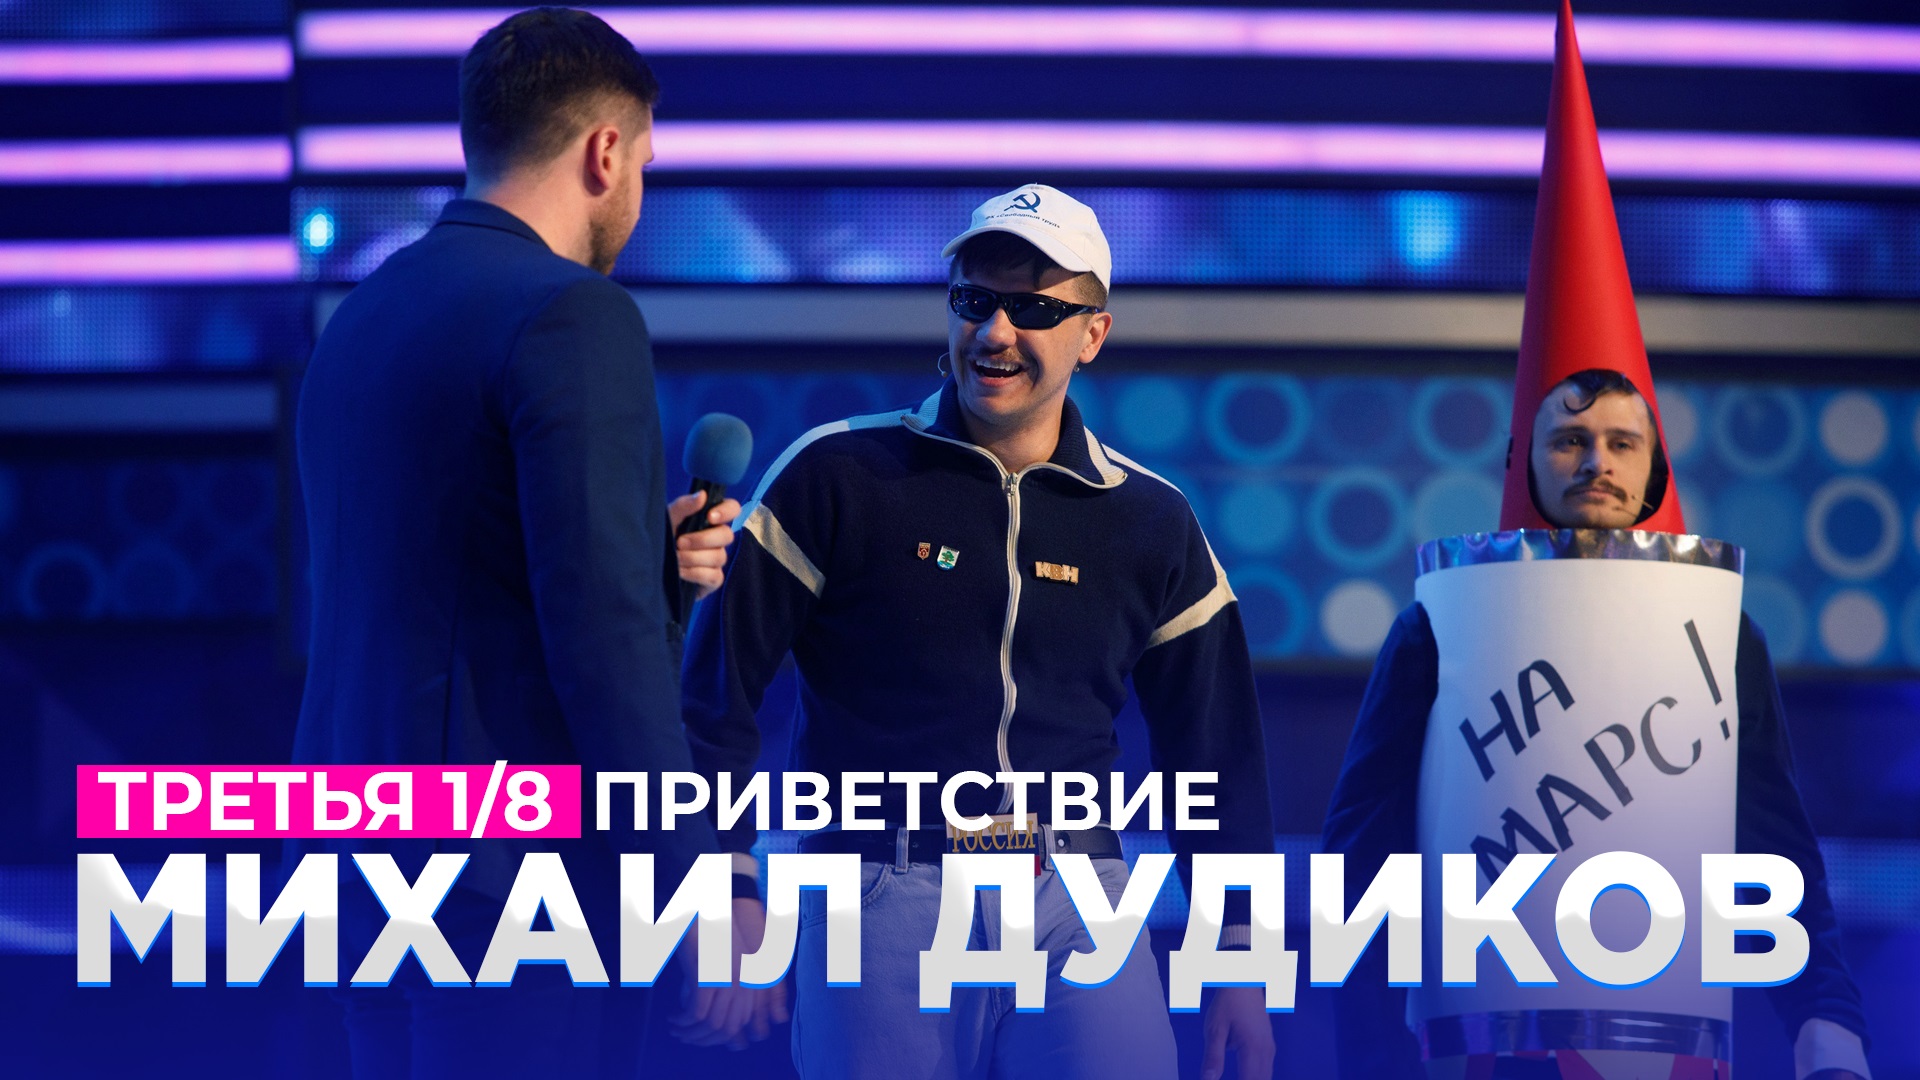 КВН 2021 Высшая лига - Михаил Дудиков Третья 1/8 Приветствие